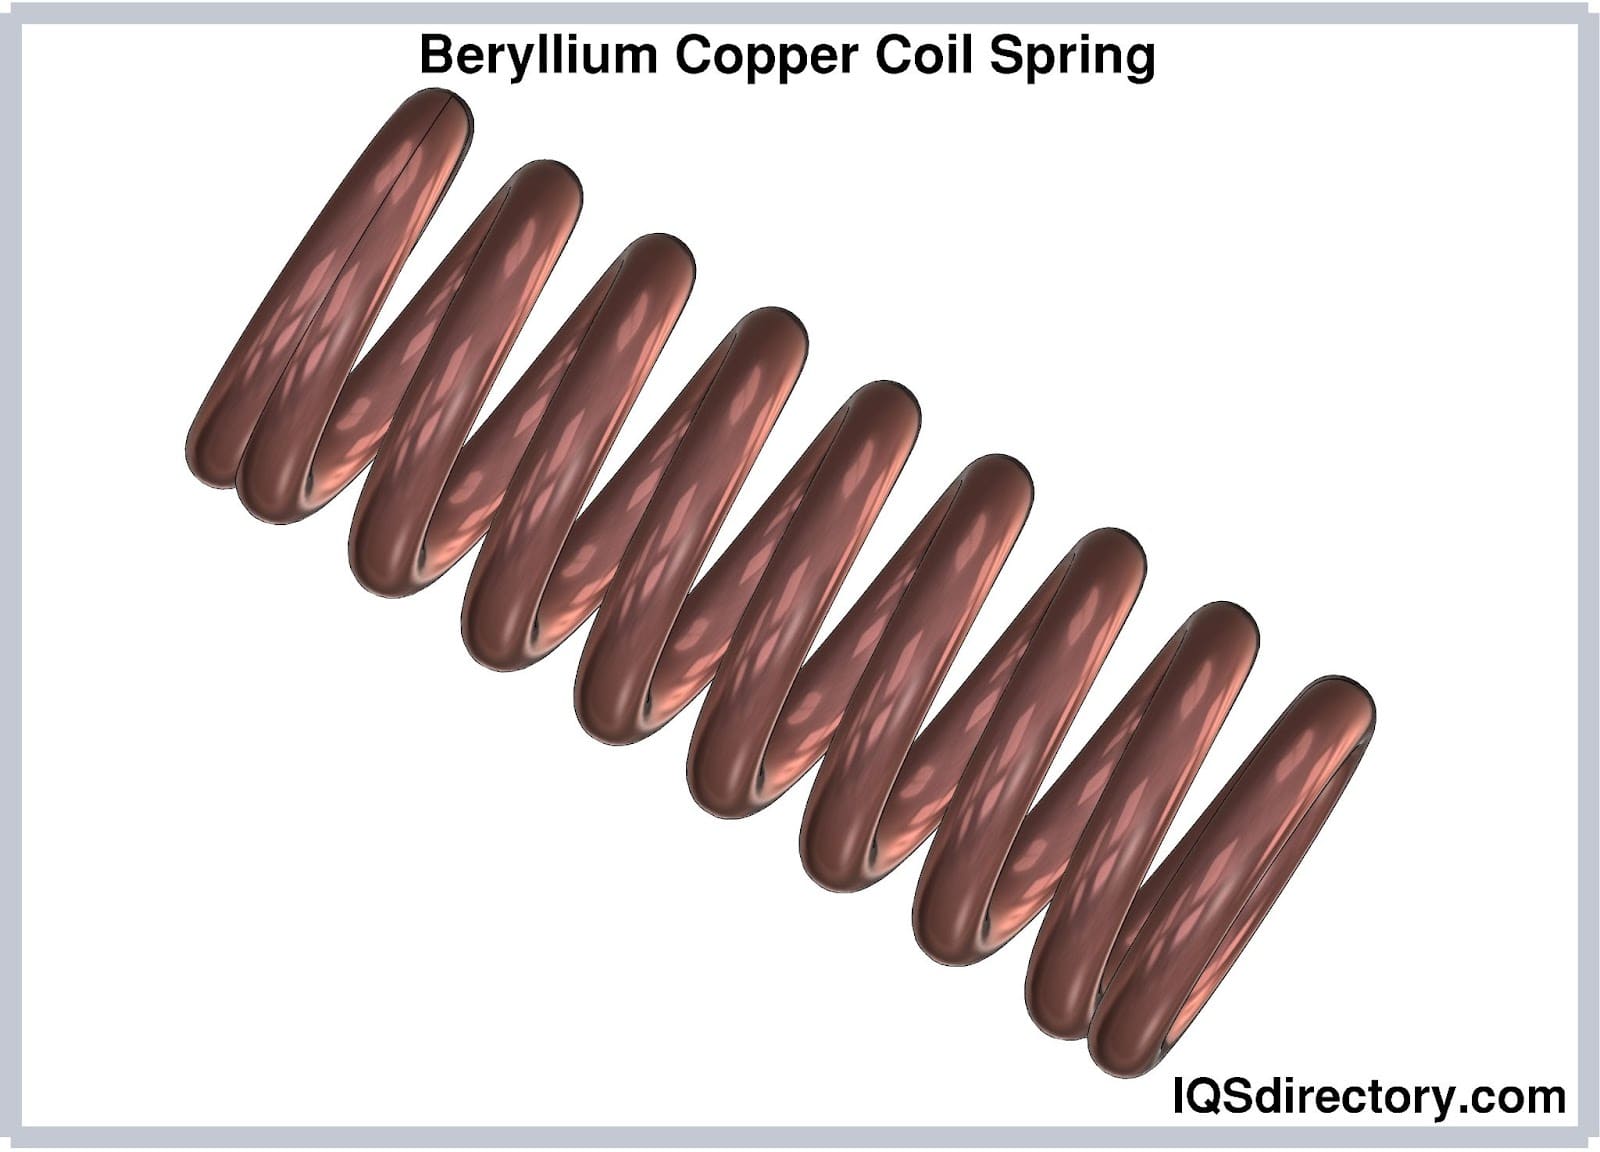 Beryllium Copper Coil Spring